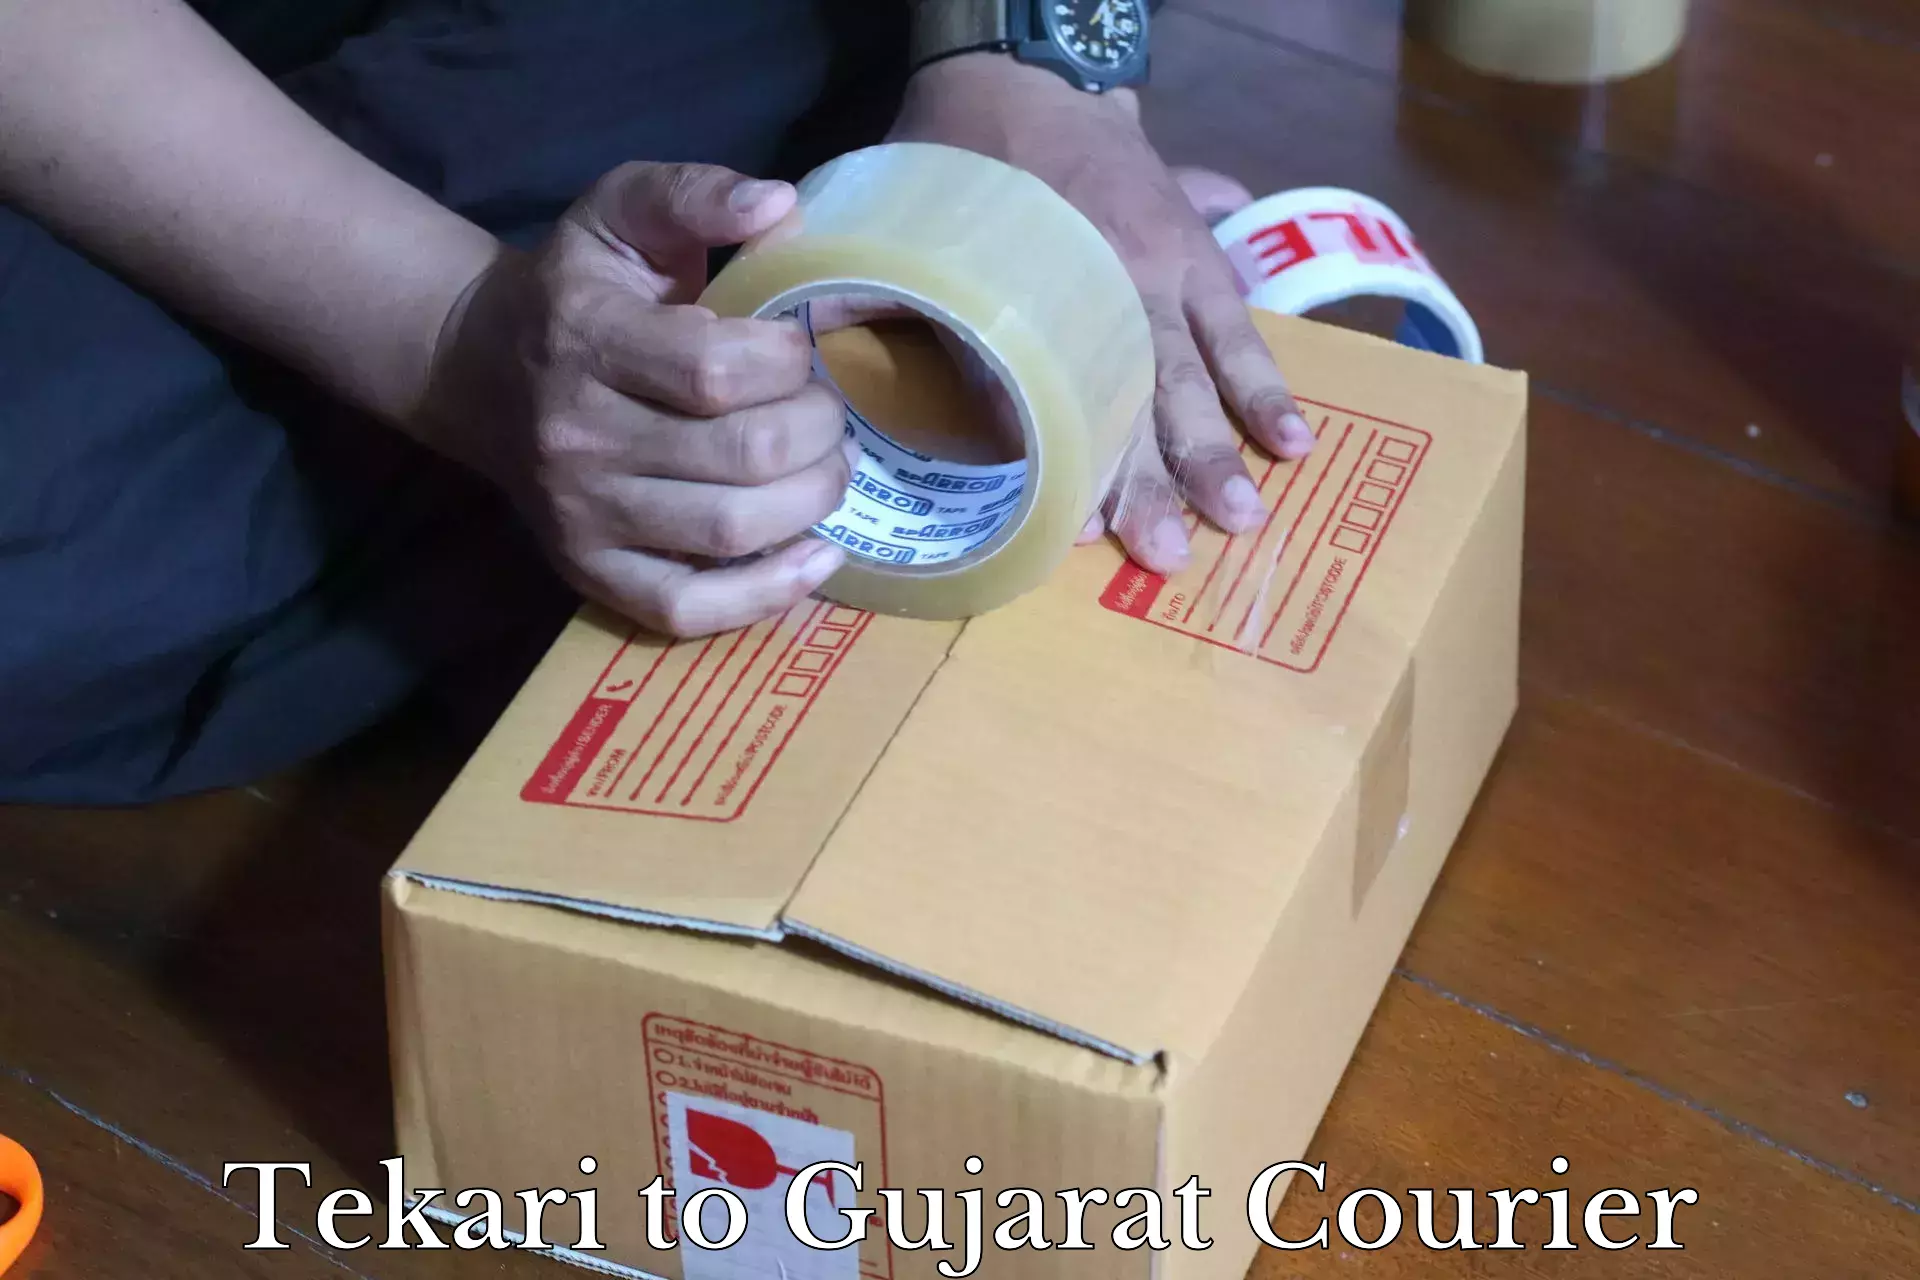 Courier service comparison Tekari to Bopal